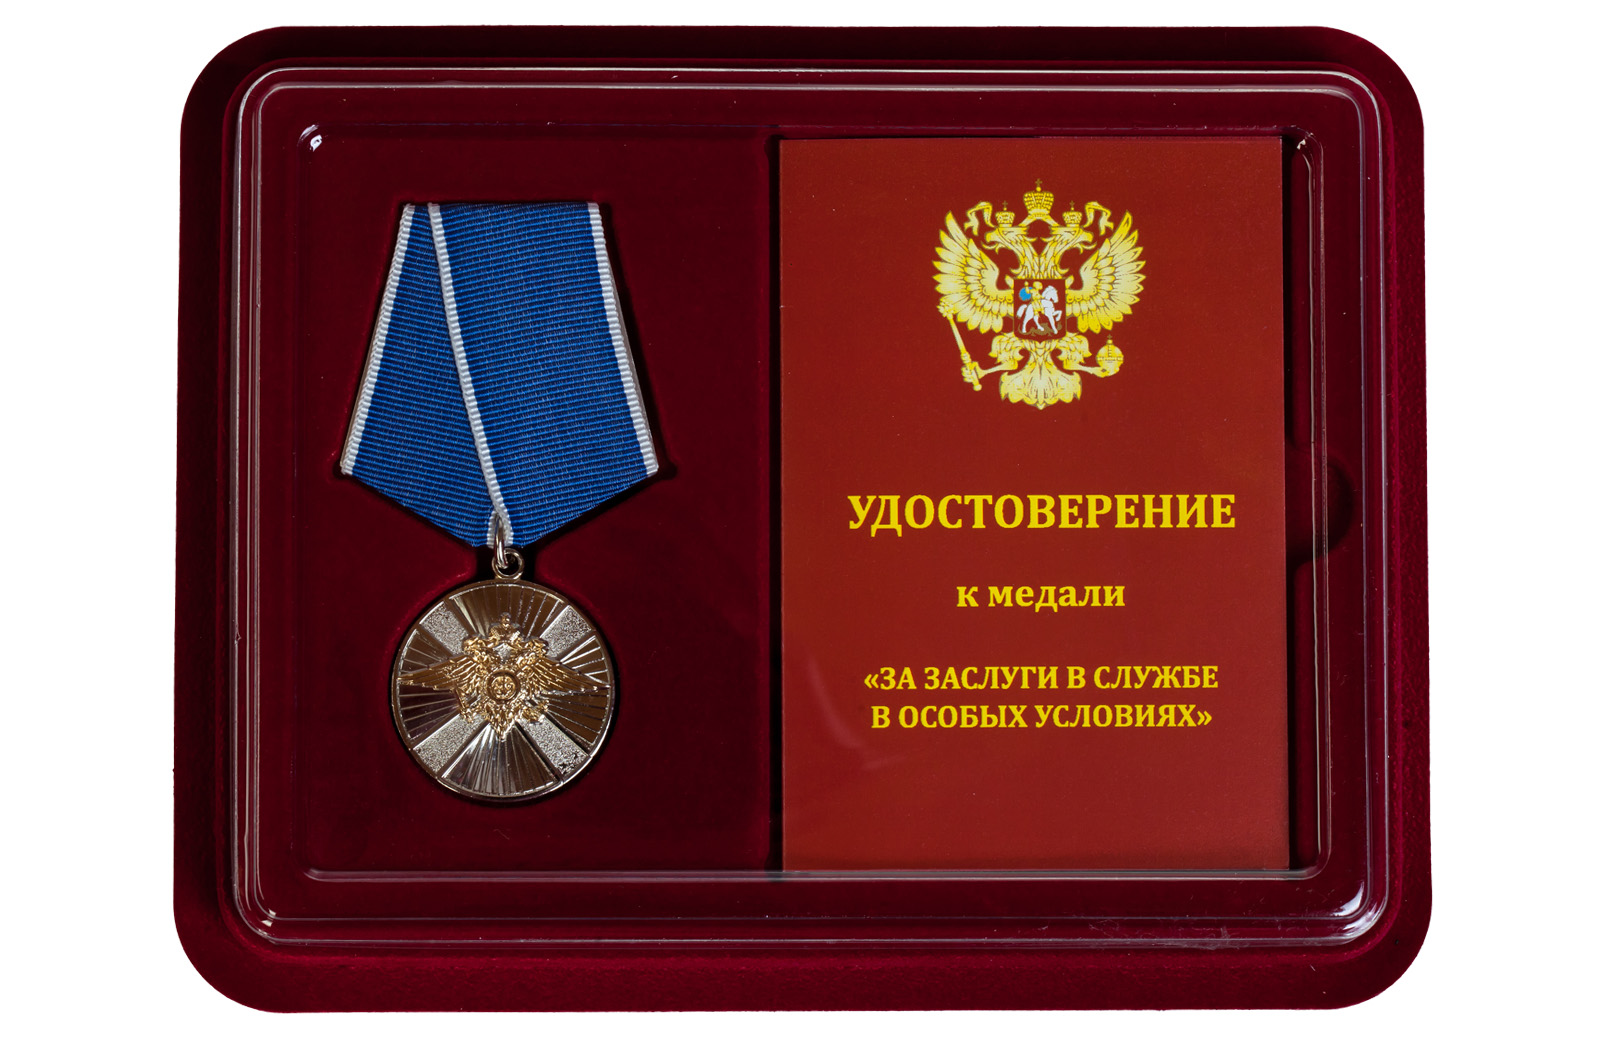 Медаль МВД РФ "За заслуги в службе в особых условиях" 